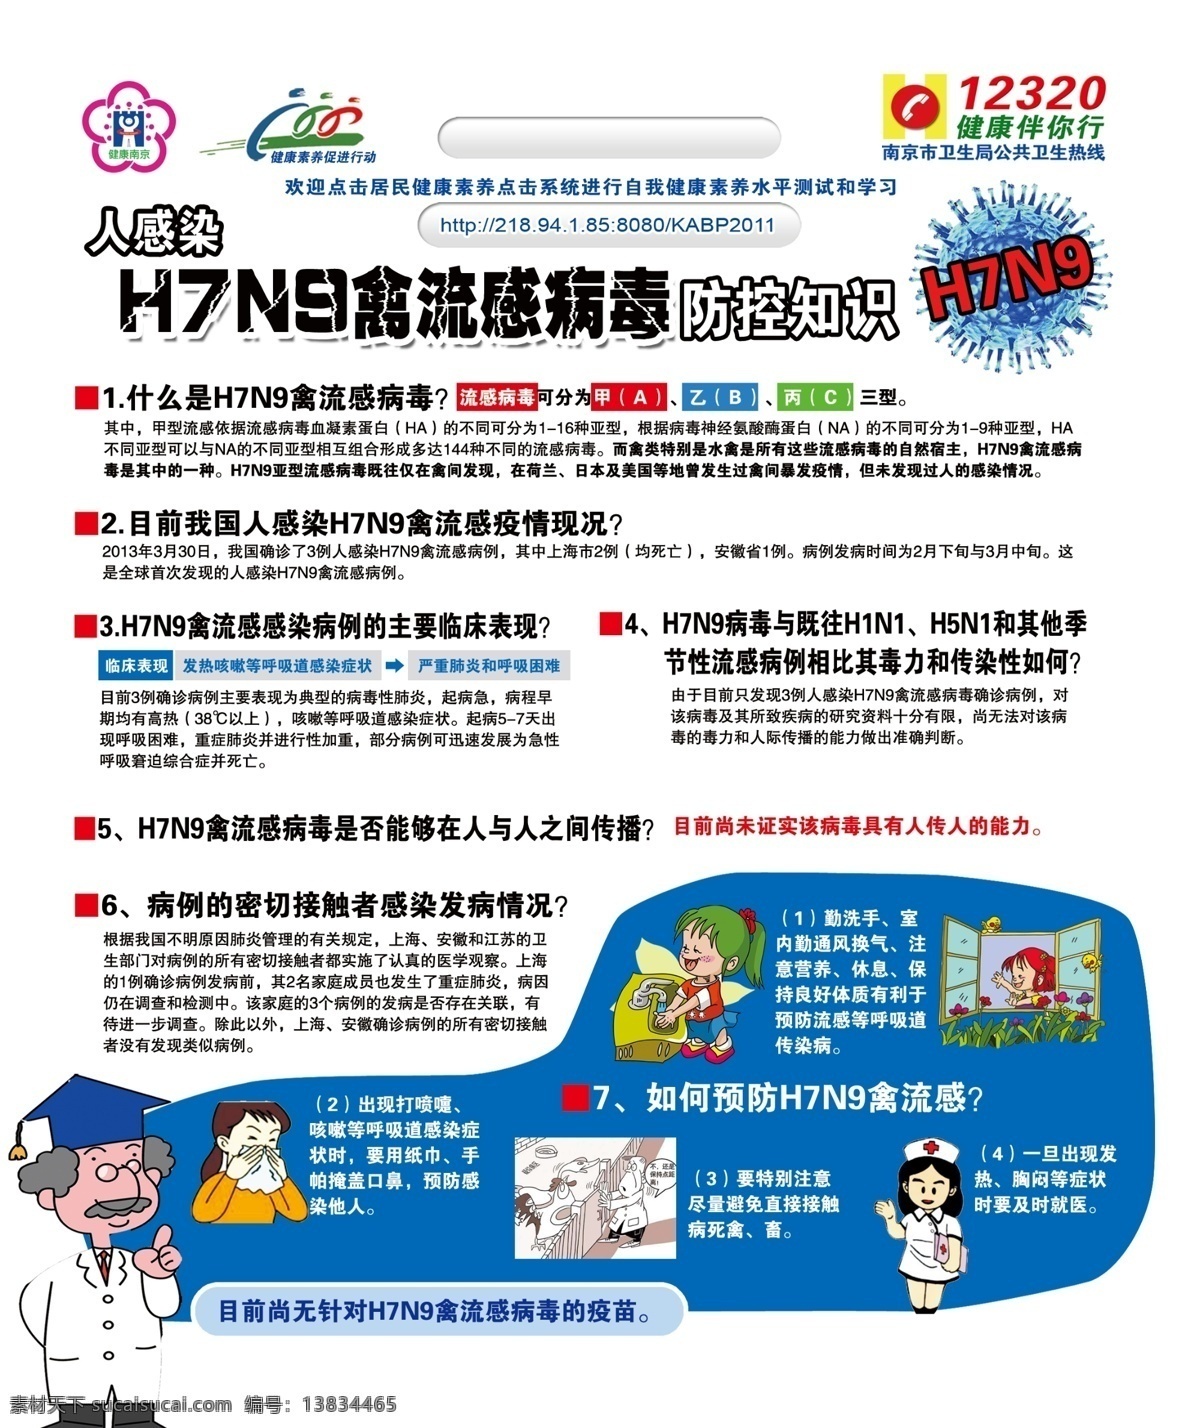 h7n9 禽流感 病毒 展板 病毒防控知识 传播途径 卡通医生 开窗通风 展牌 展板模板 广告设计模板 源文件